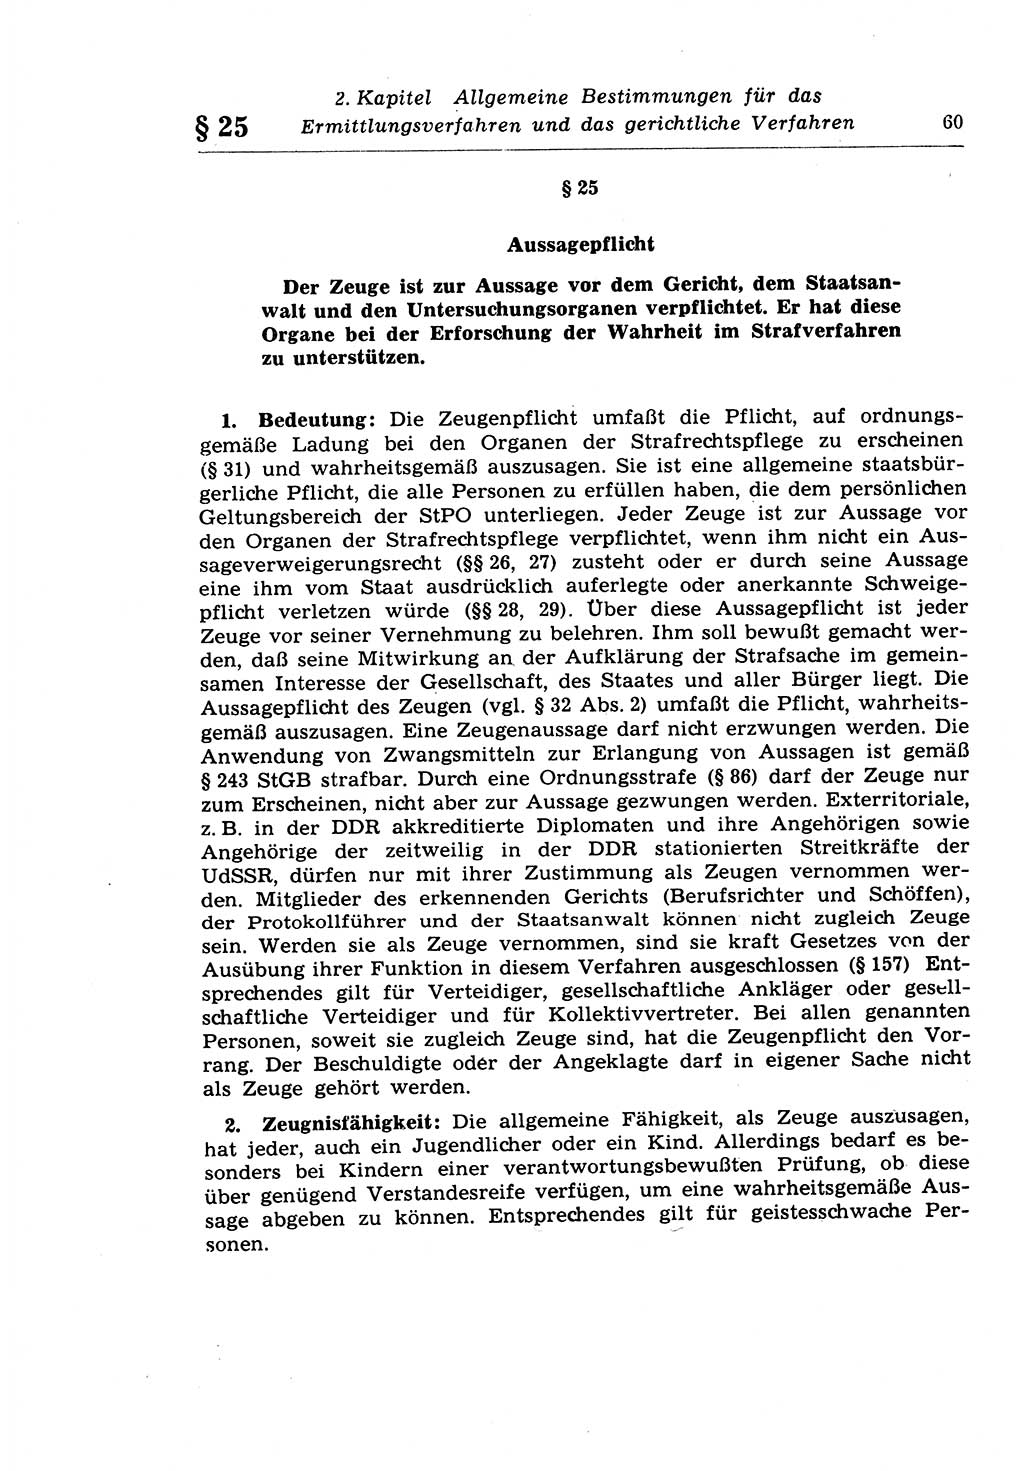 Strafprozeßrecht der DDR (Deutsche Demokratische Republik), Lehrkommentar zur Strafprozeßordnung (StPO) 1968, Seite 60 (Strafprozeßr. DDR Lehrkomm. StPO 19688, S. 60)